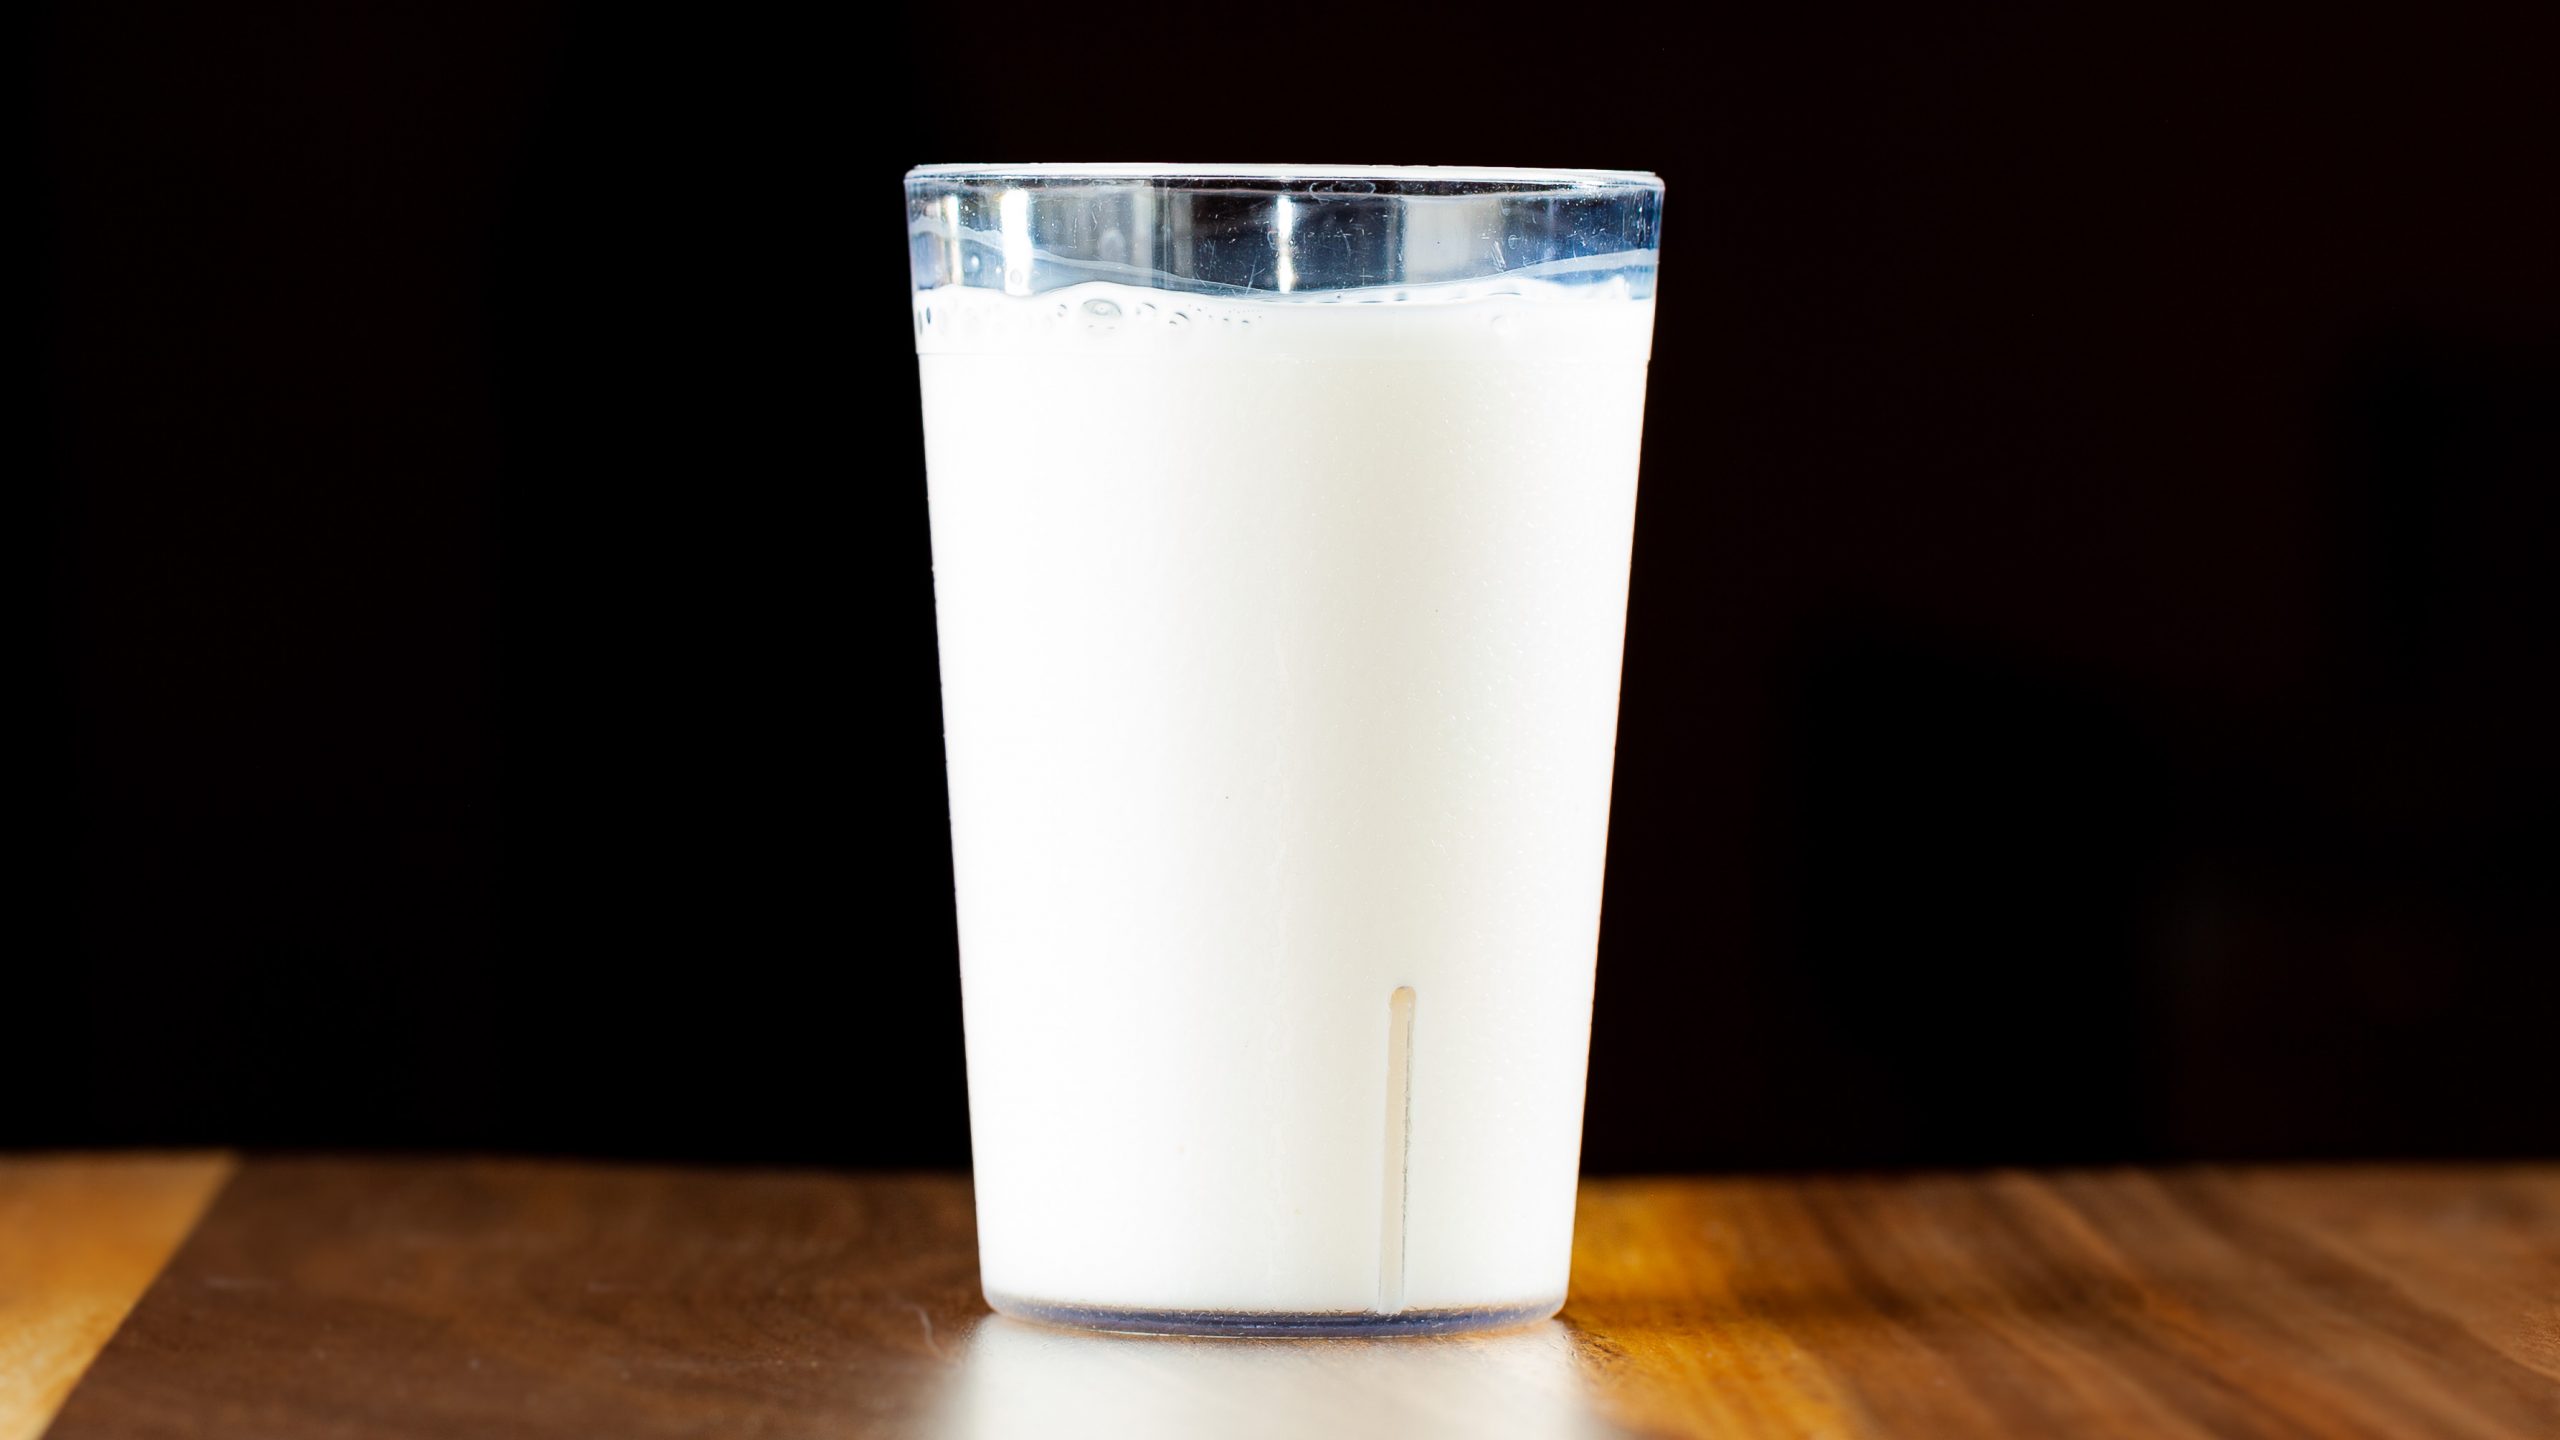 An 8-oz glass of kids milk.